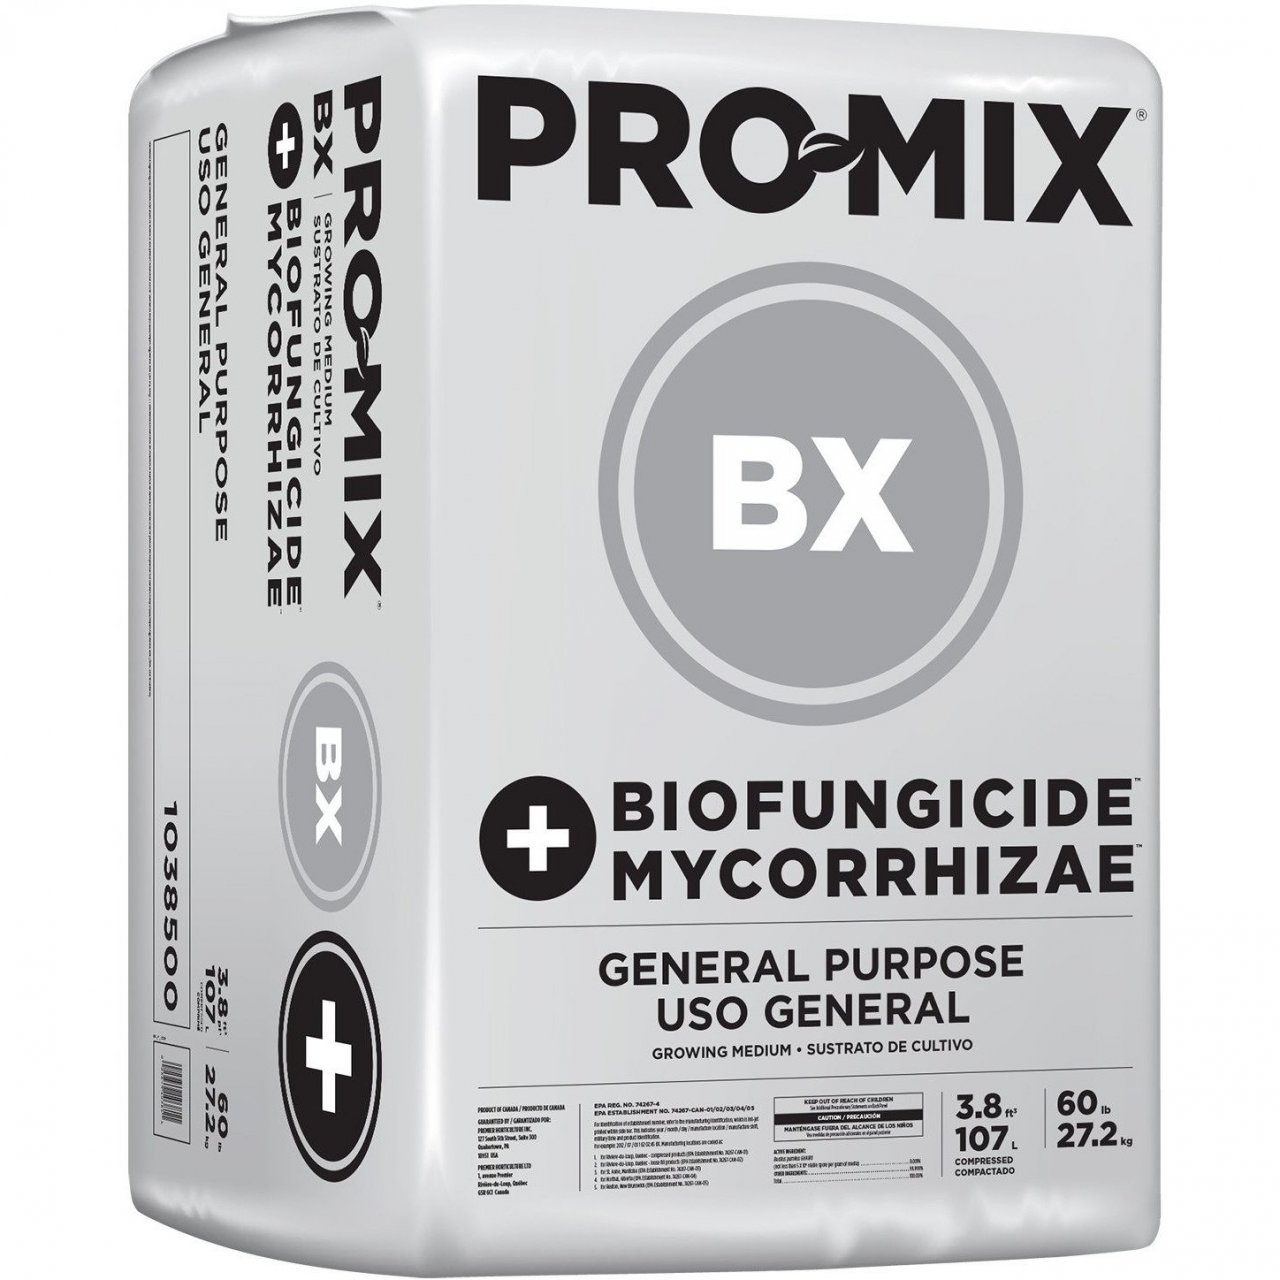 Pro-Mix_BX_Biofungicide_Mycorrhizae.jpg